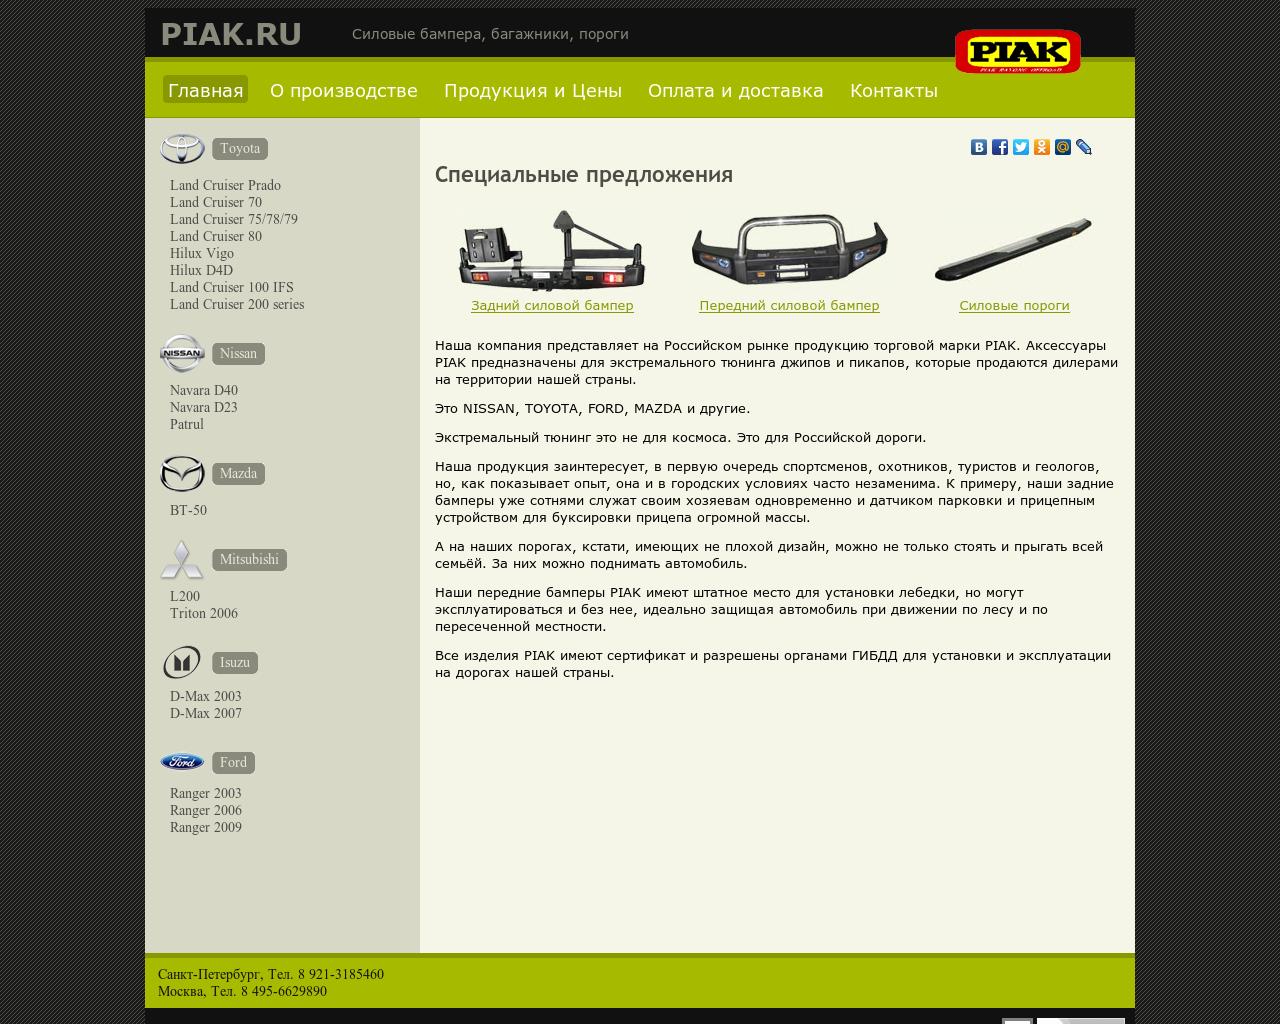 Изображение сайта piak.ru в разрешении 1280x1024